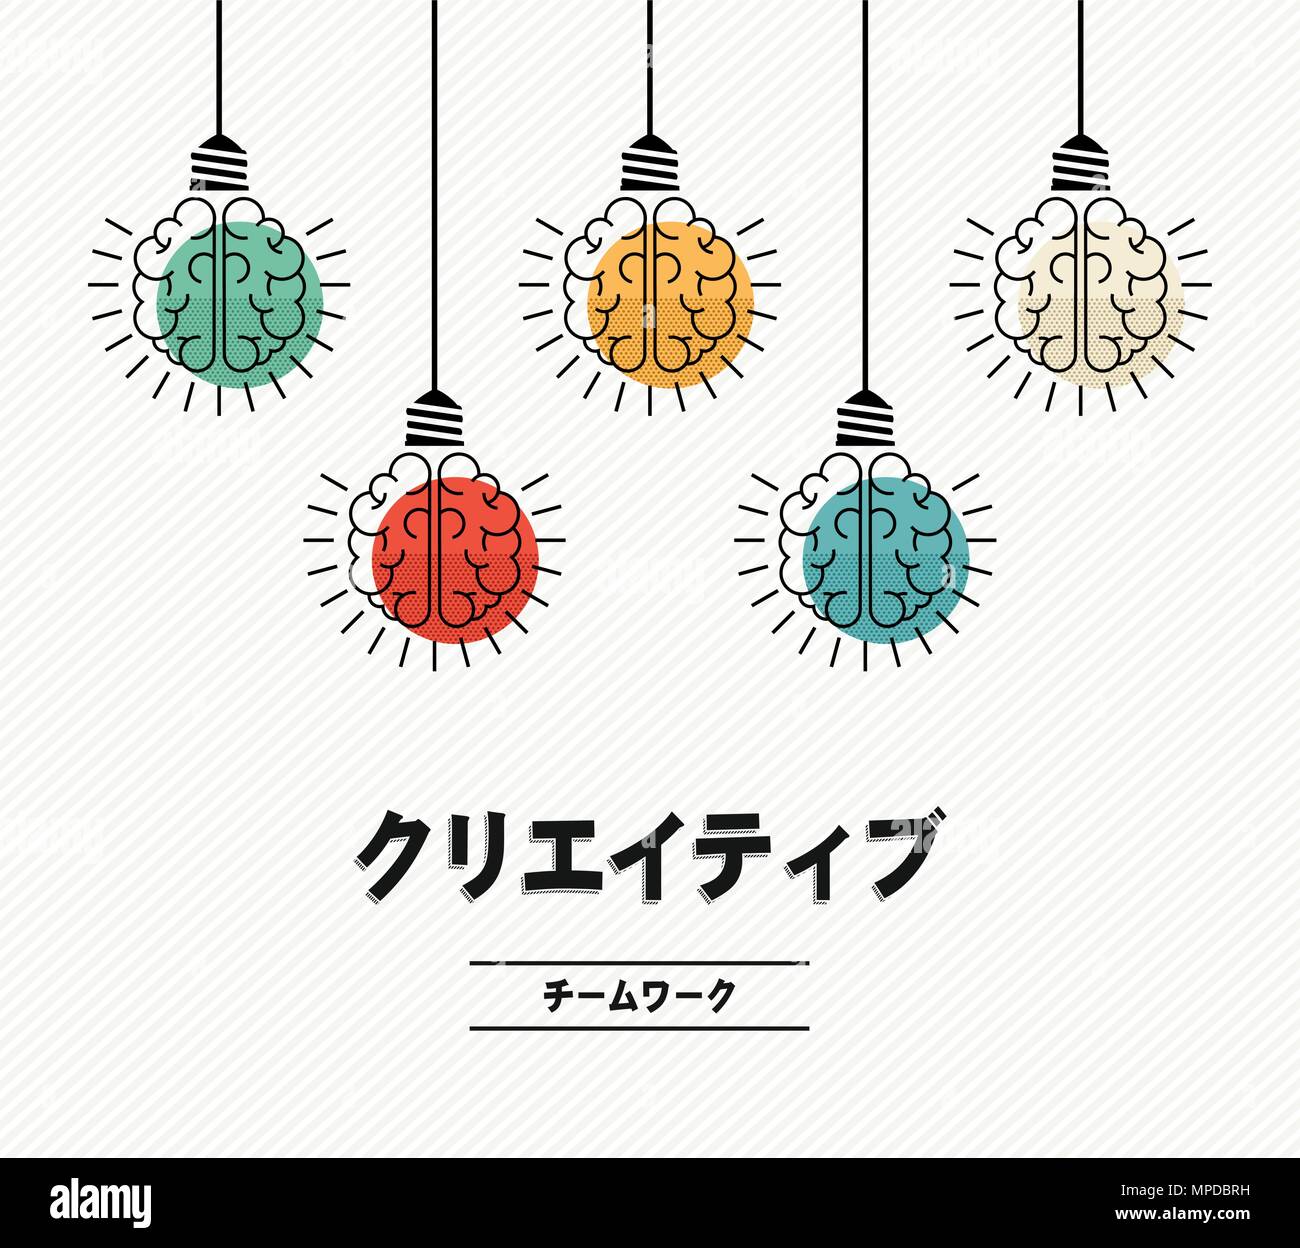 Équipe créative de conception moderne en langue japonaise avec le cerveau humain comme lampe lumière colorée, la créativité d'entreprise concept. Vecteur EPS10. Illustration de Vecteur